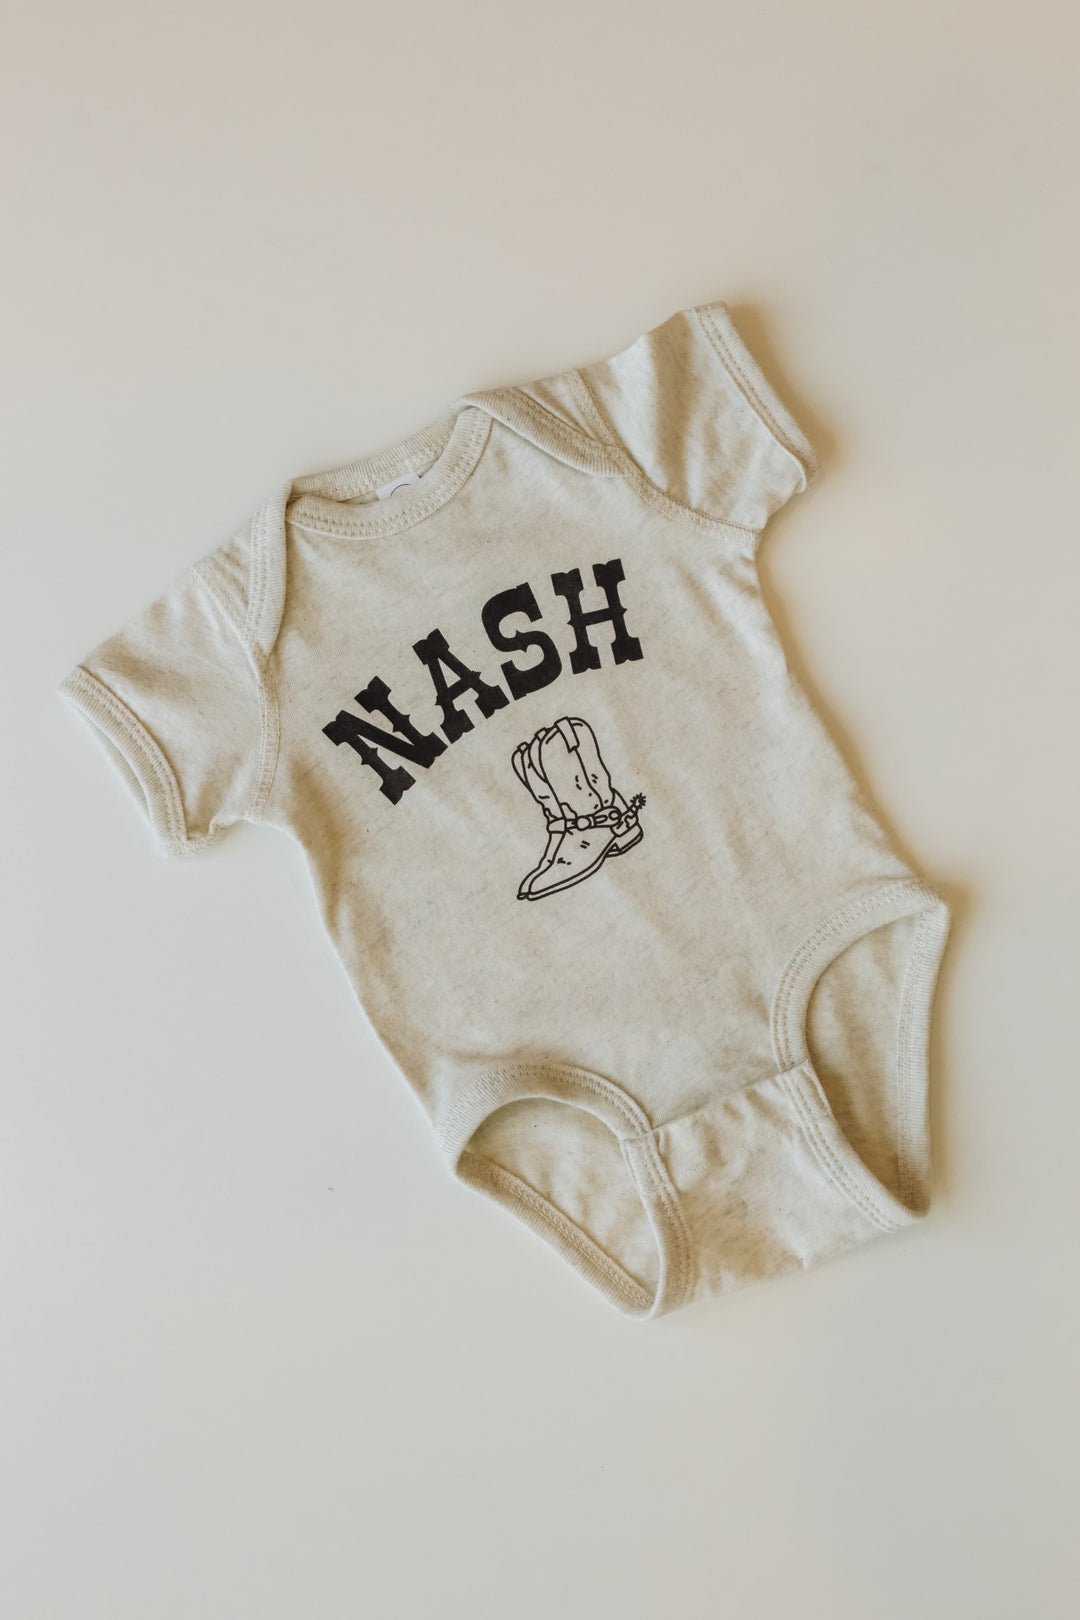 Baby NASH Onesie [Boots]